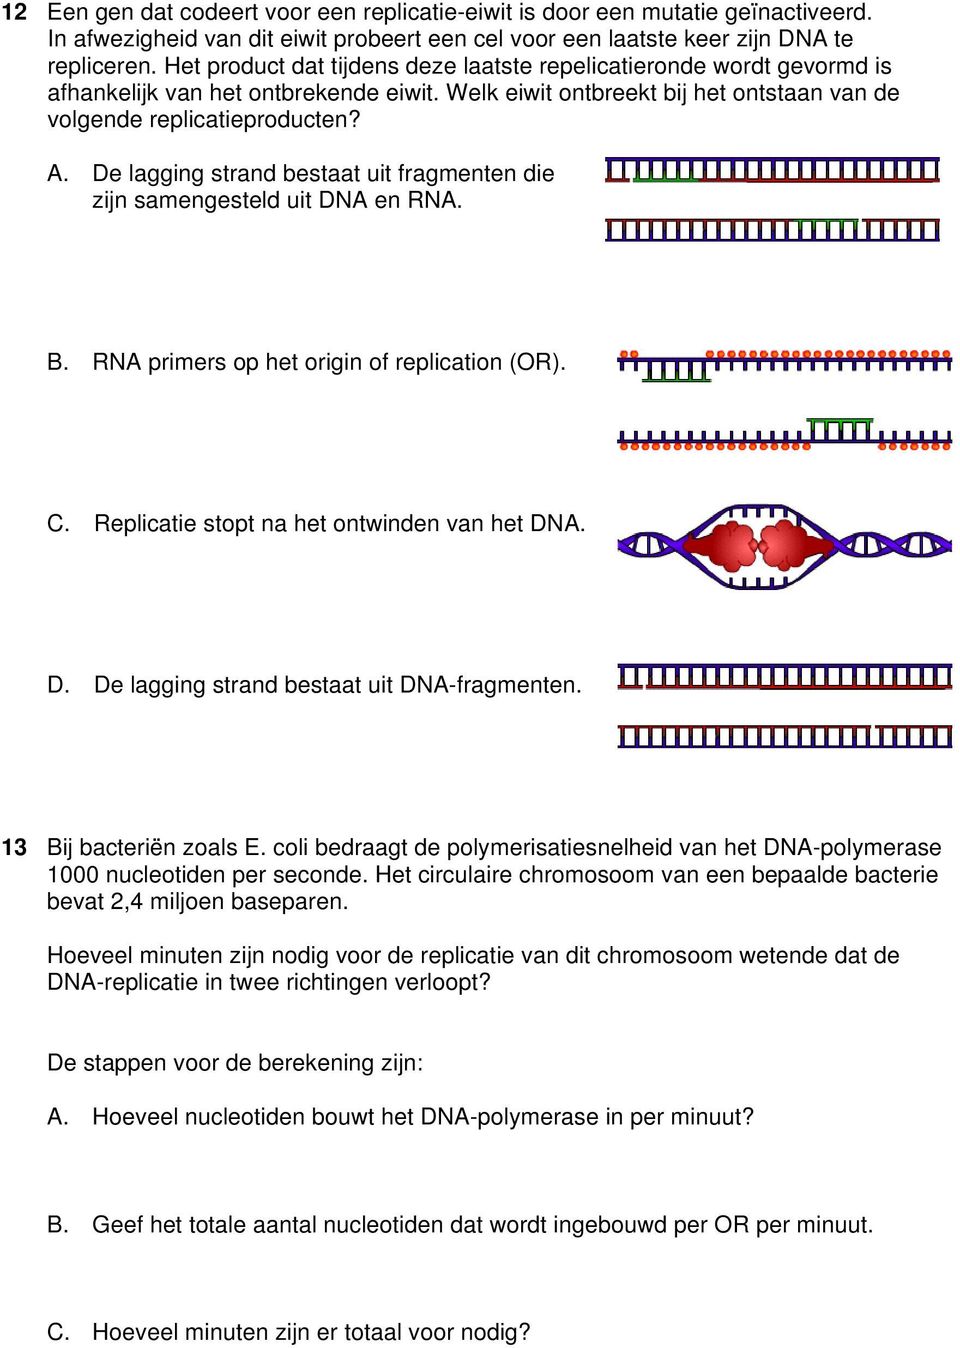 De lagging strand bestaat uit fragmenten die zijn samengesteld uit DNA en RNA. B. RNA primers op het origin of replication (OR). C. Replicatie stopt na het ontwinden van het DNA. D. De lagging strand bestaat uit DNA-fragmenten.